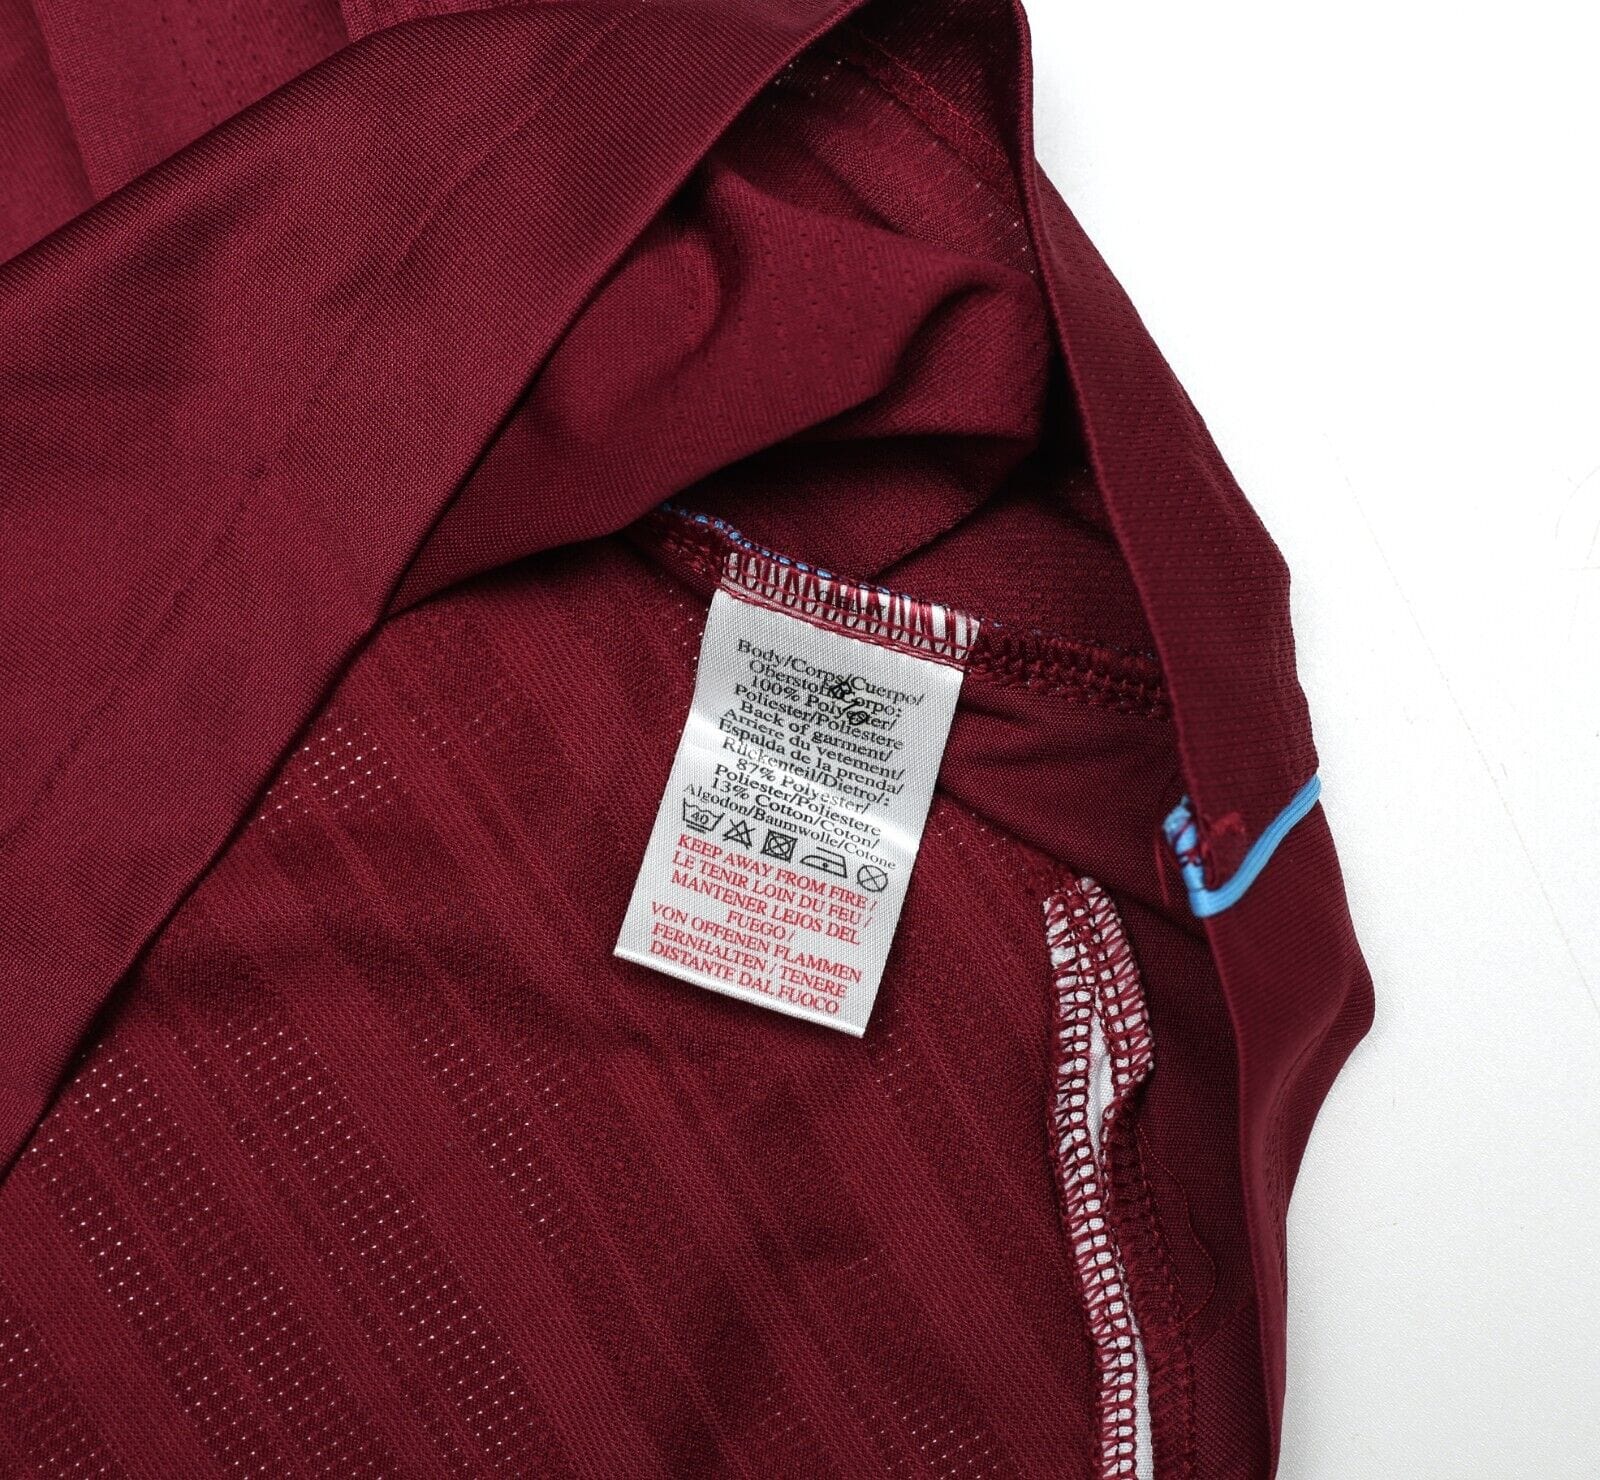 2007/08 NOBLE #16 West Ham United Vintage Umbro Football Shirt (S)